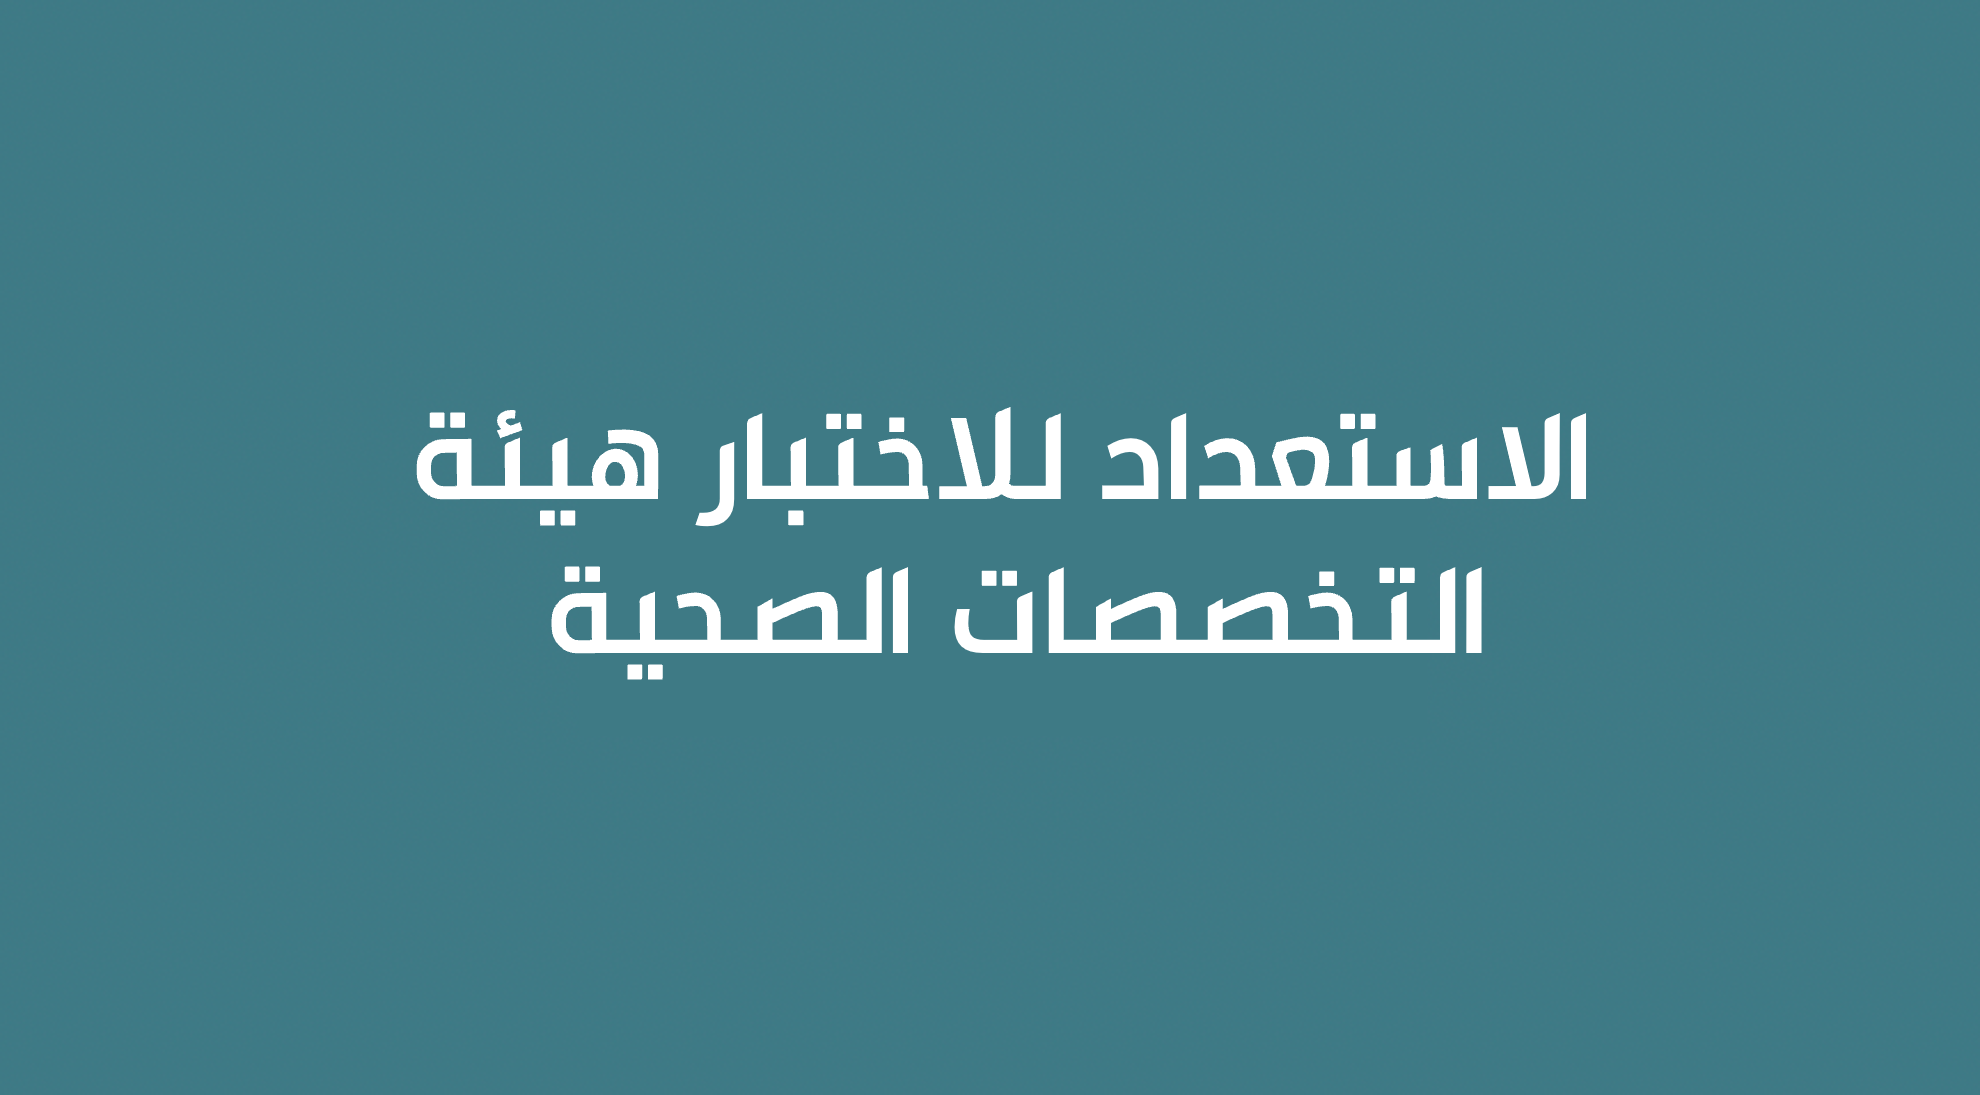 الاستعداد لاختبارات الهيئة السعودية للتخصصات الصحية